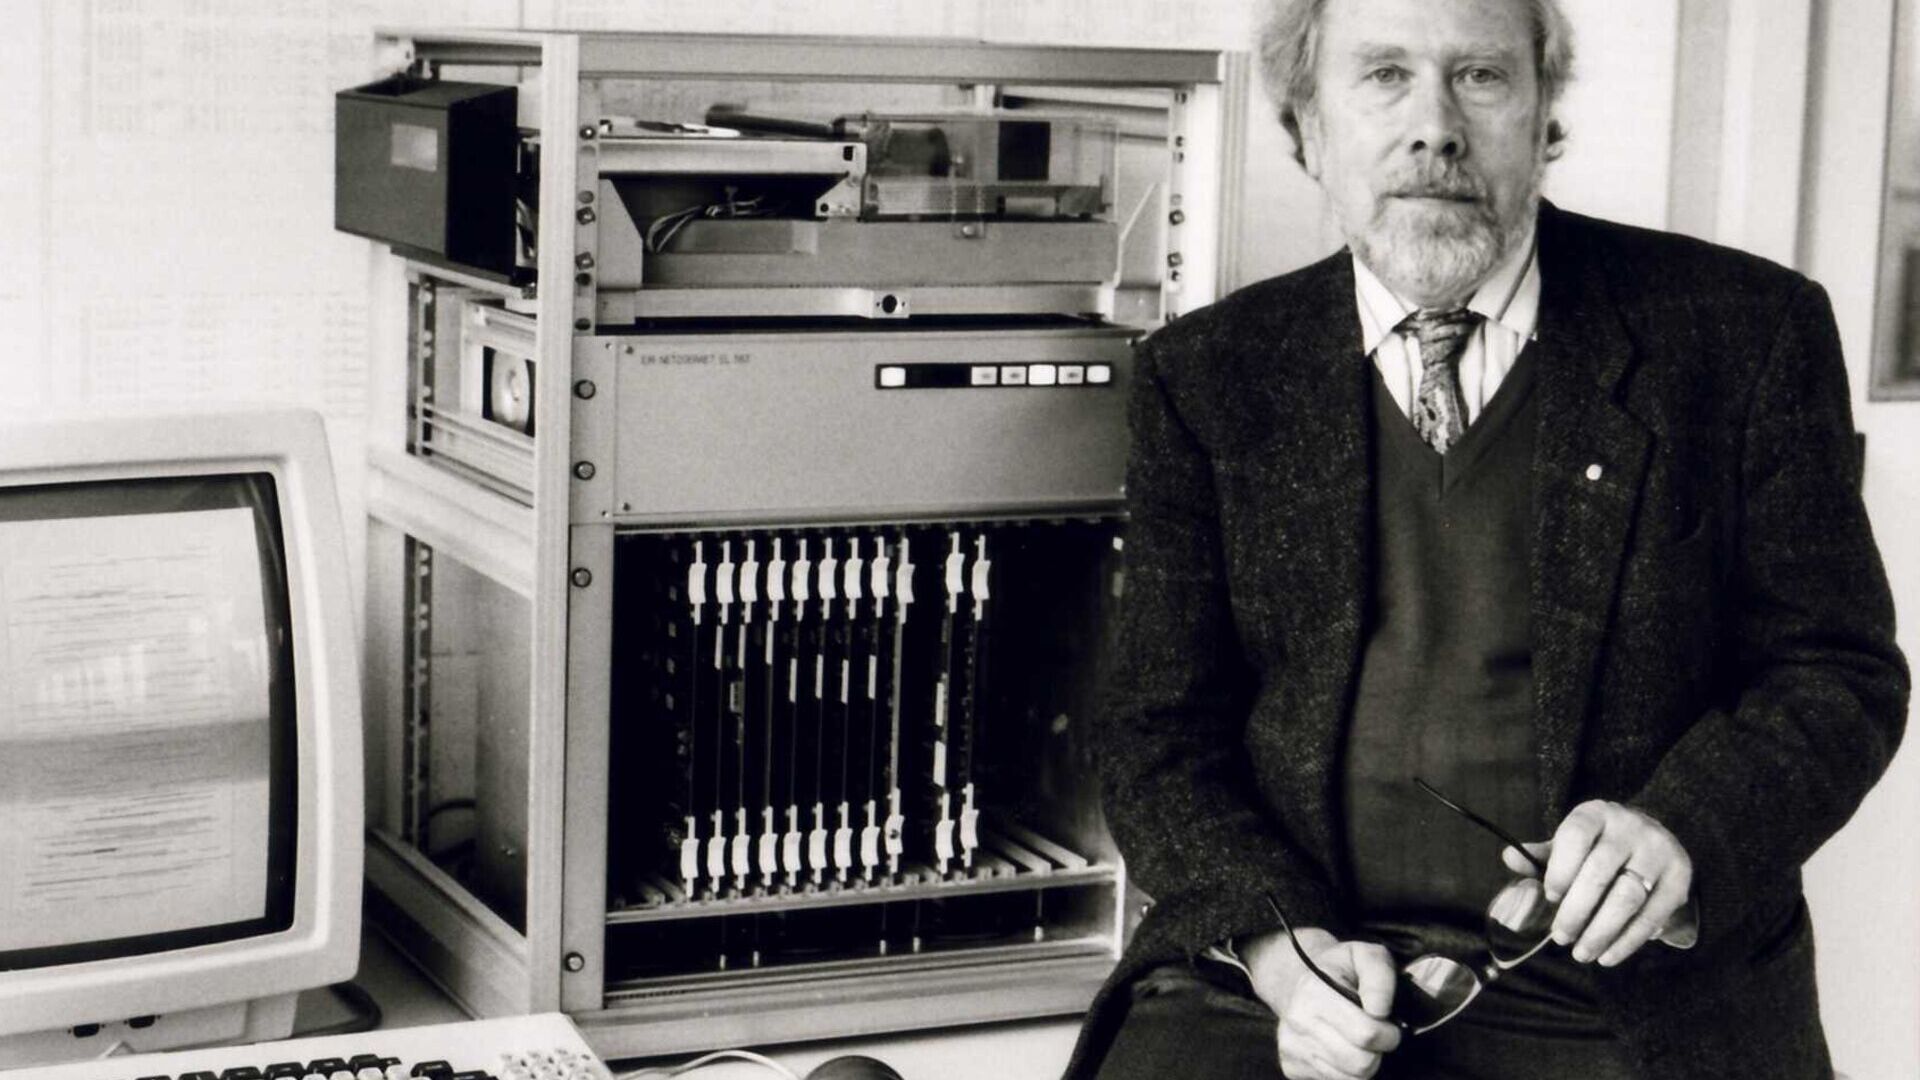 Niklaus Wirth: won the prestigious Turing Award in 1984